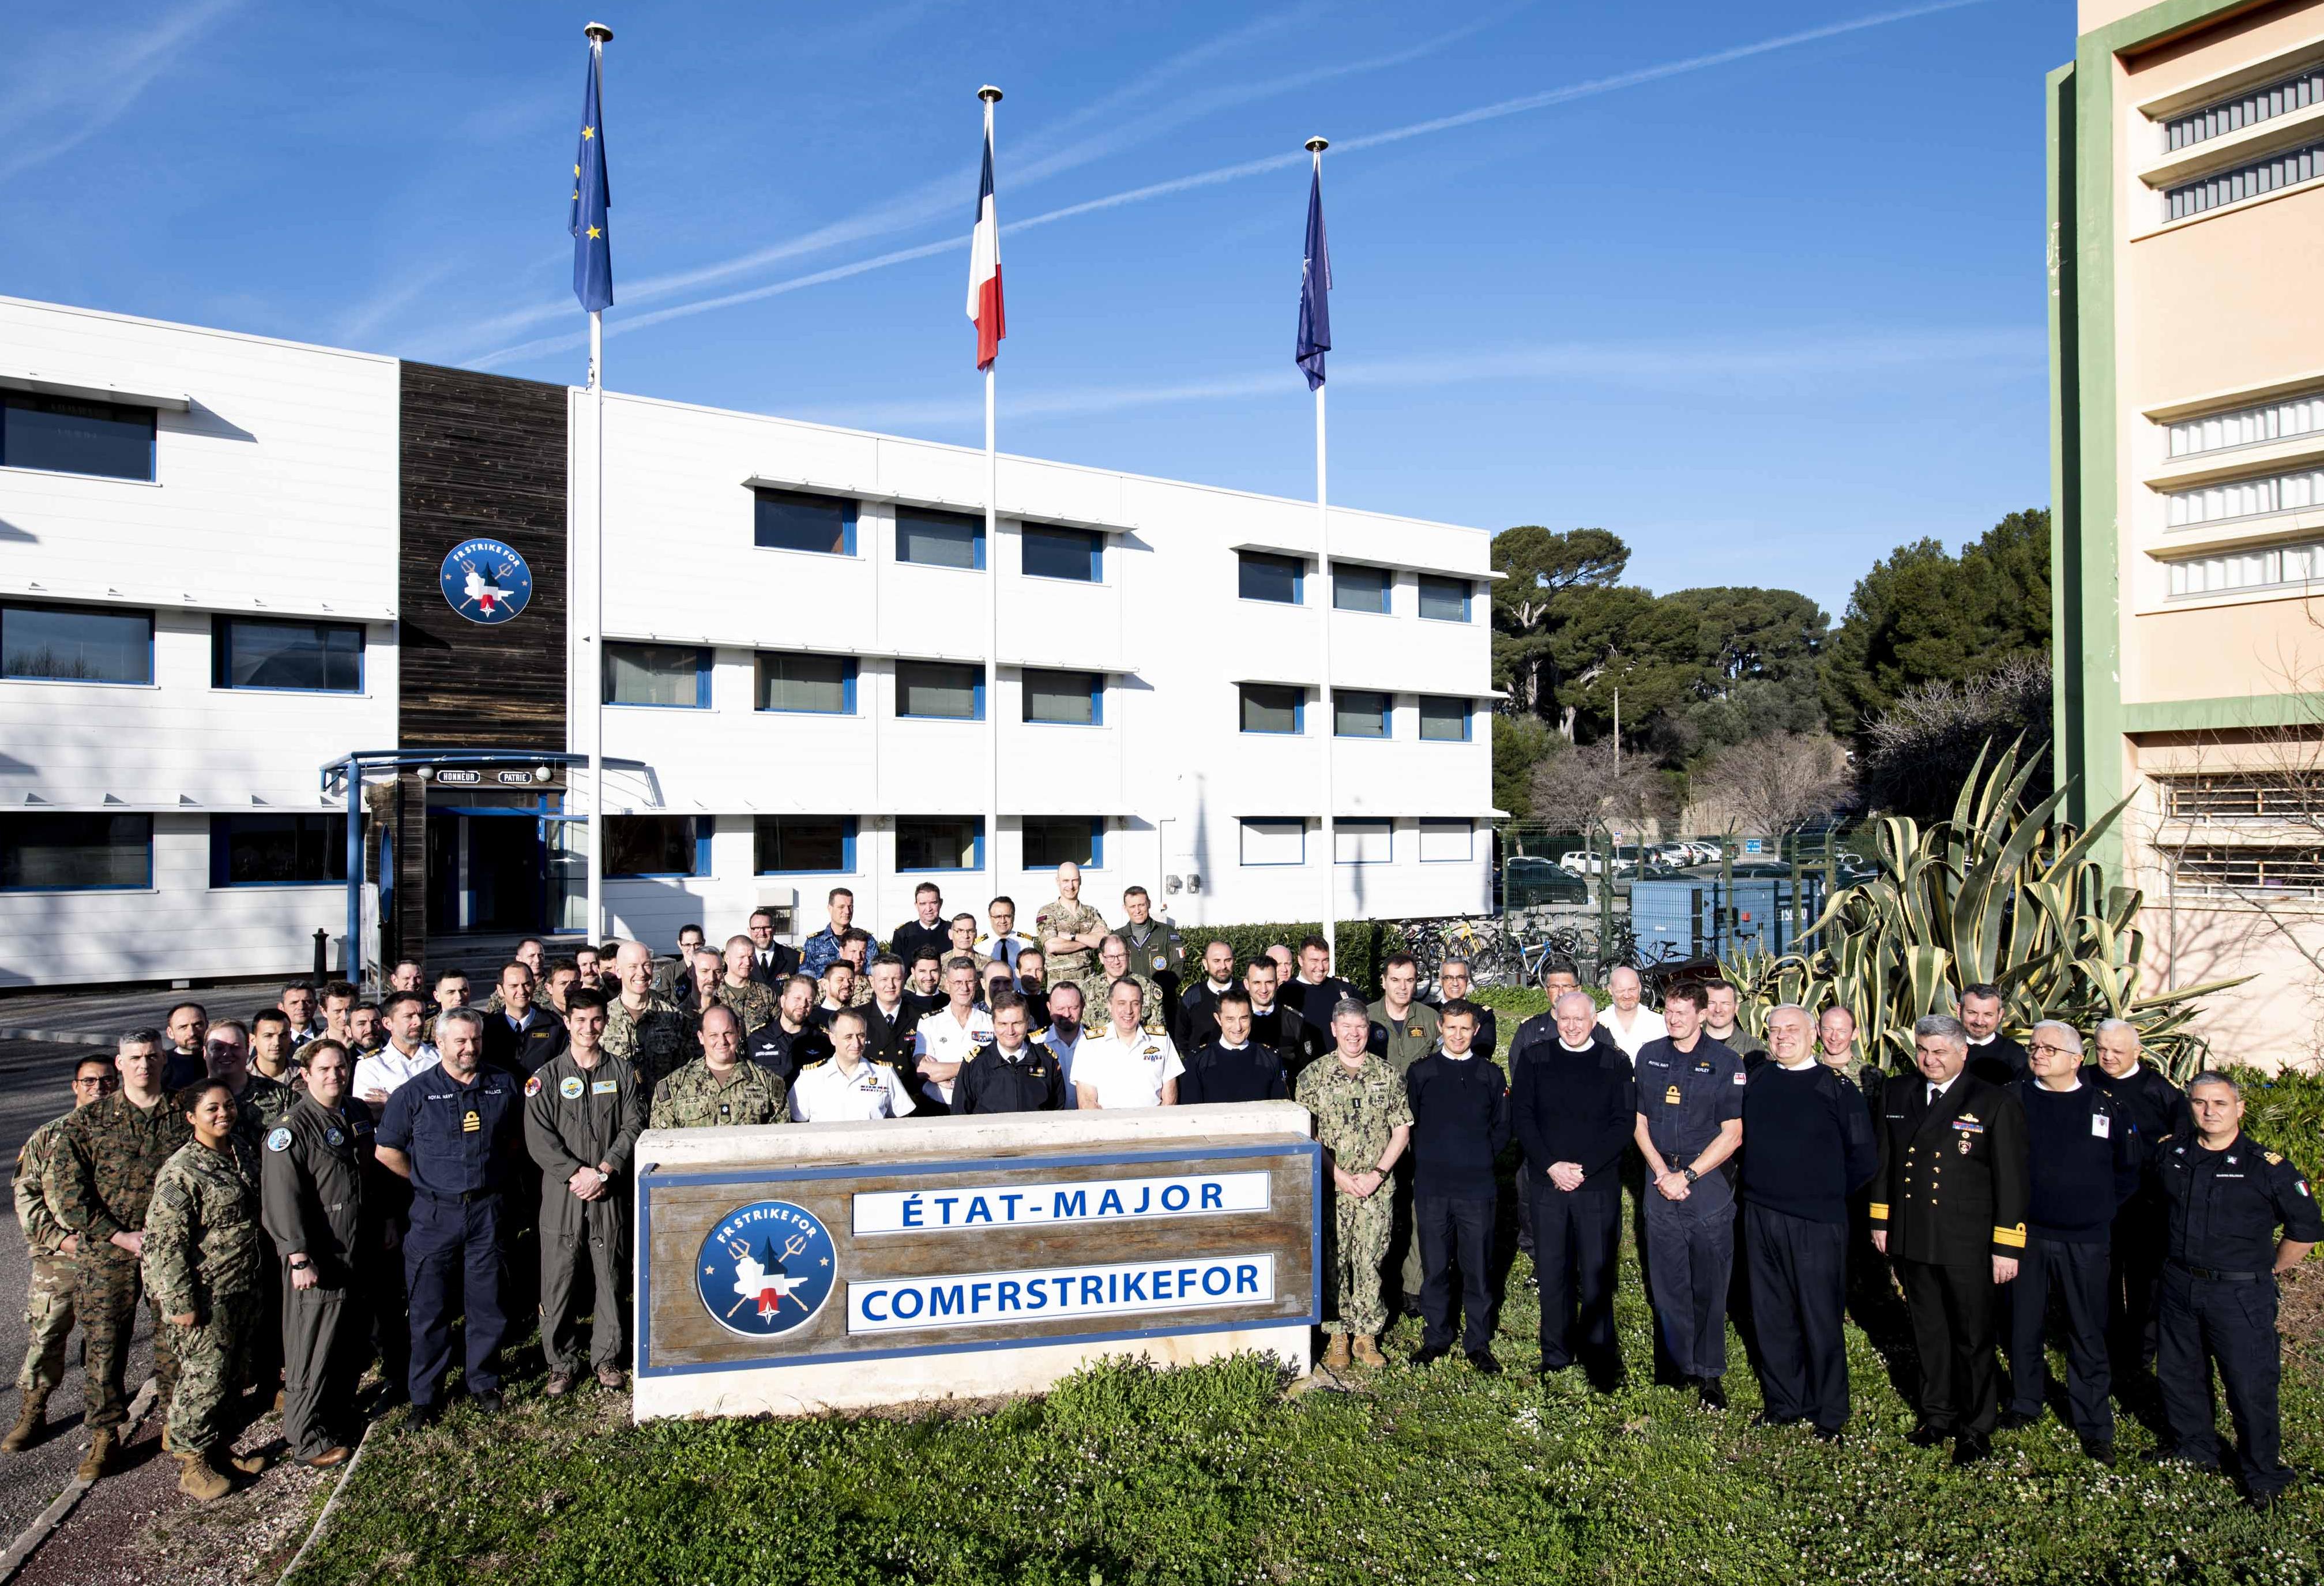 La Marine nationale a accueilli le Maritime Strike Forces Forum de l’OTAN